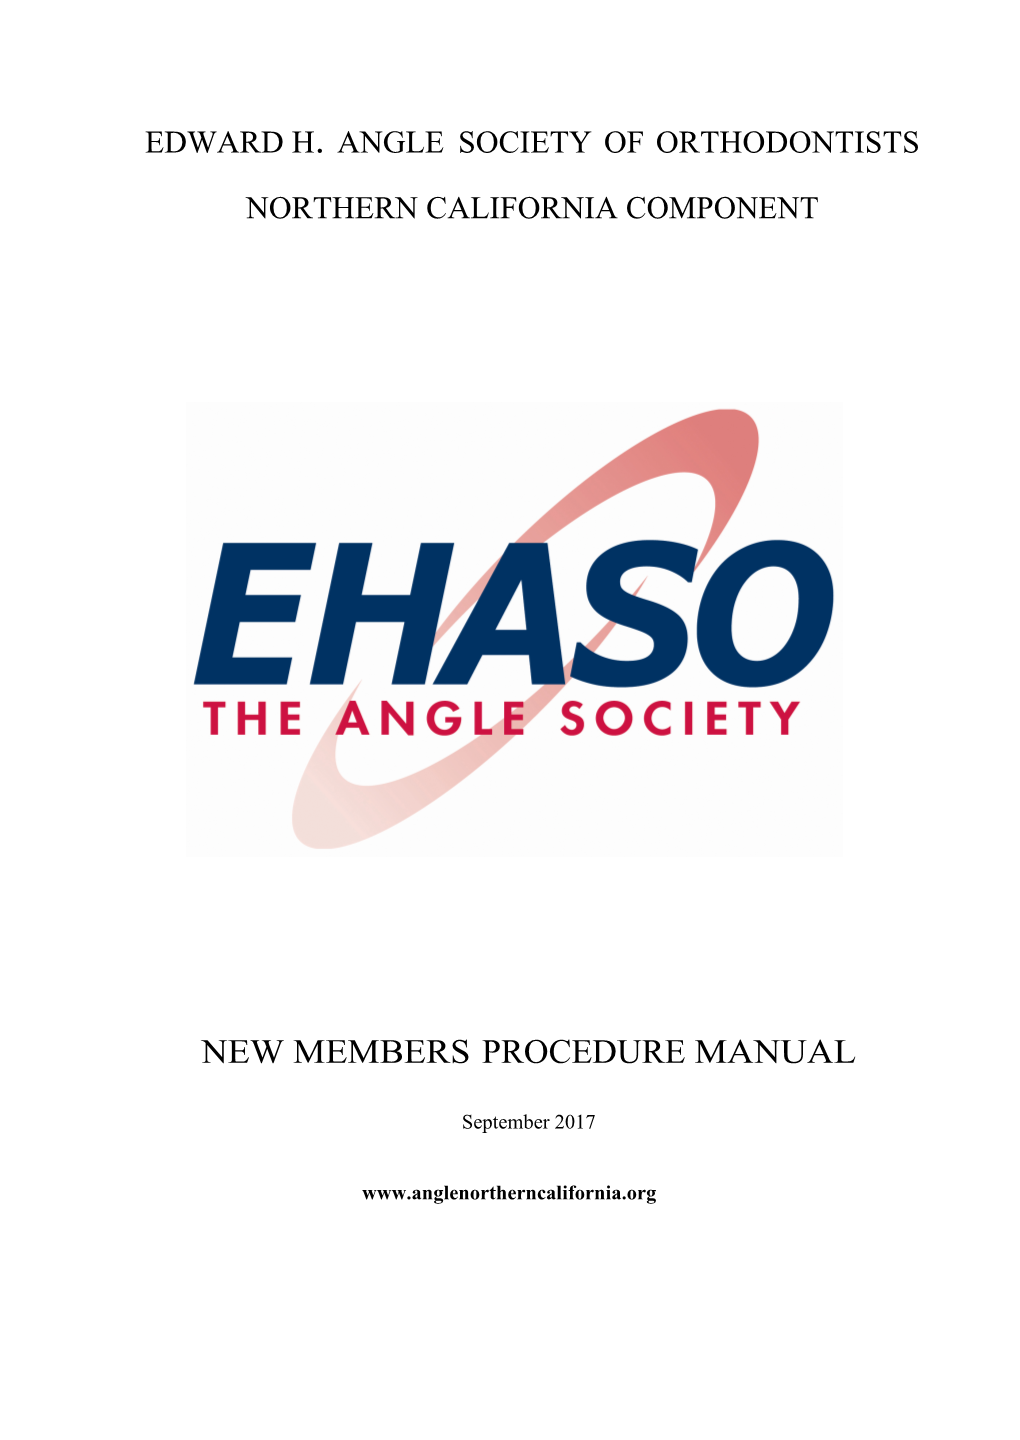 New Members Procedure Manual